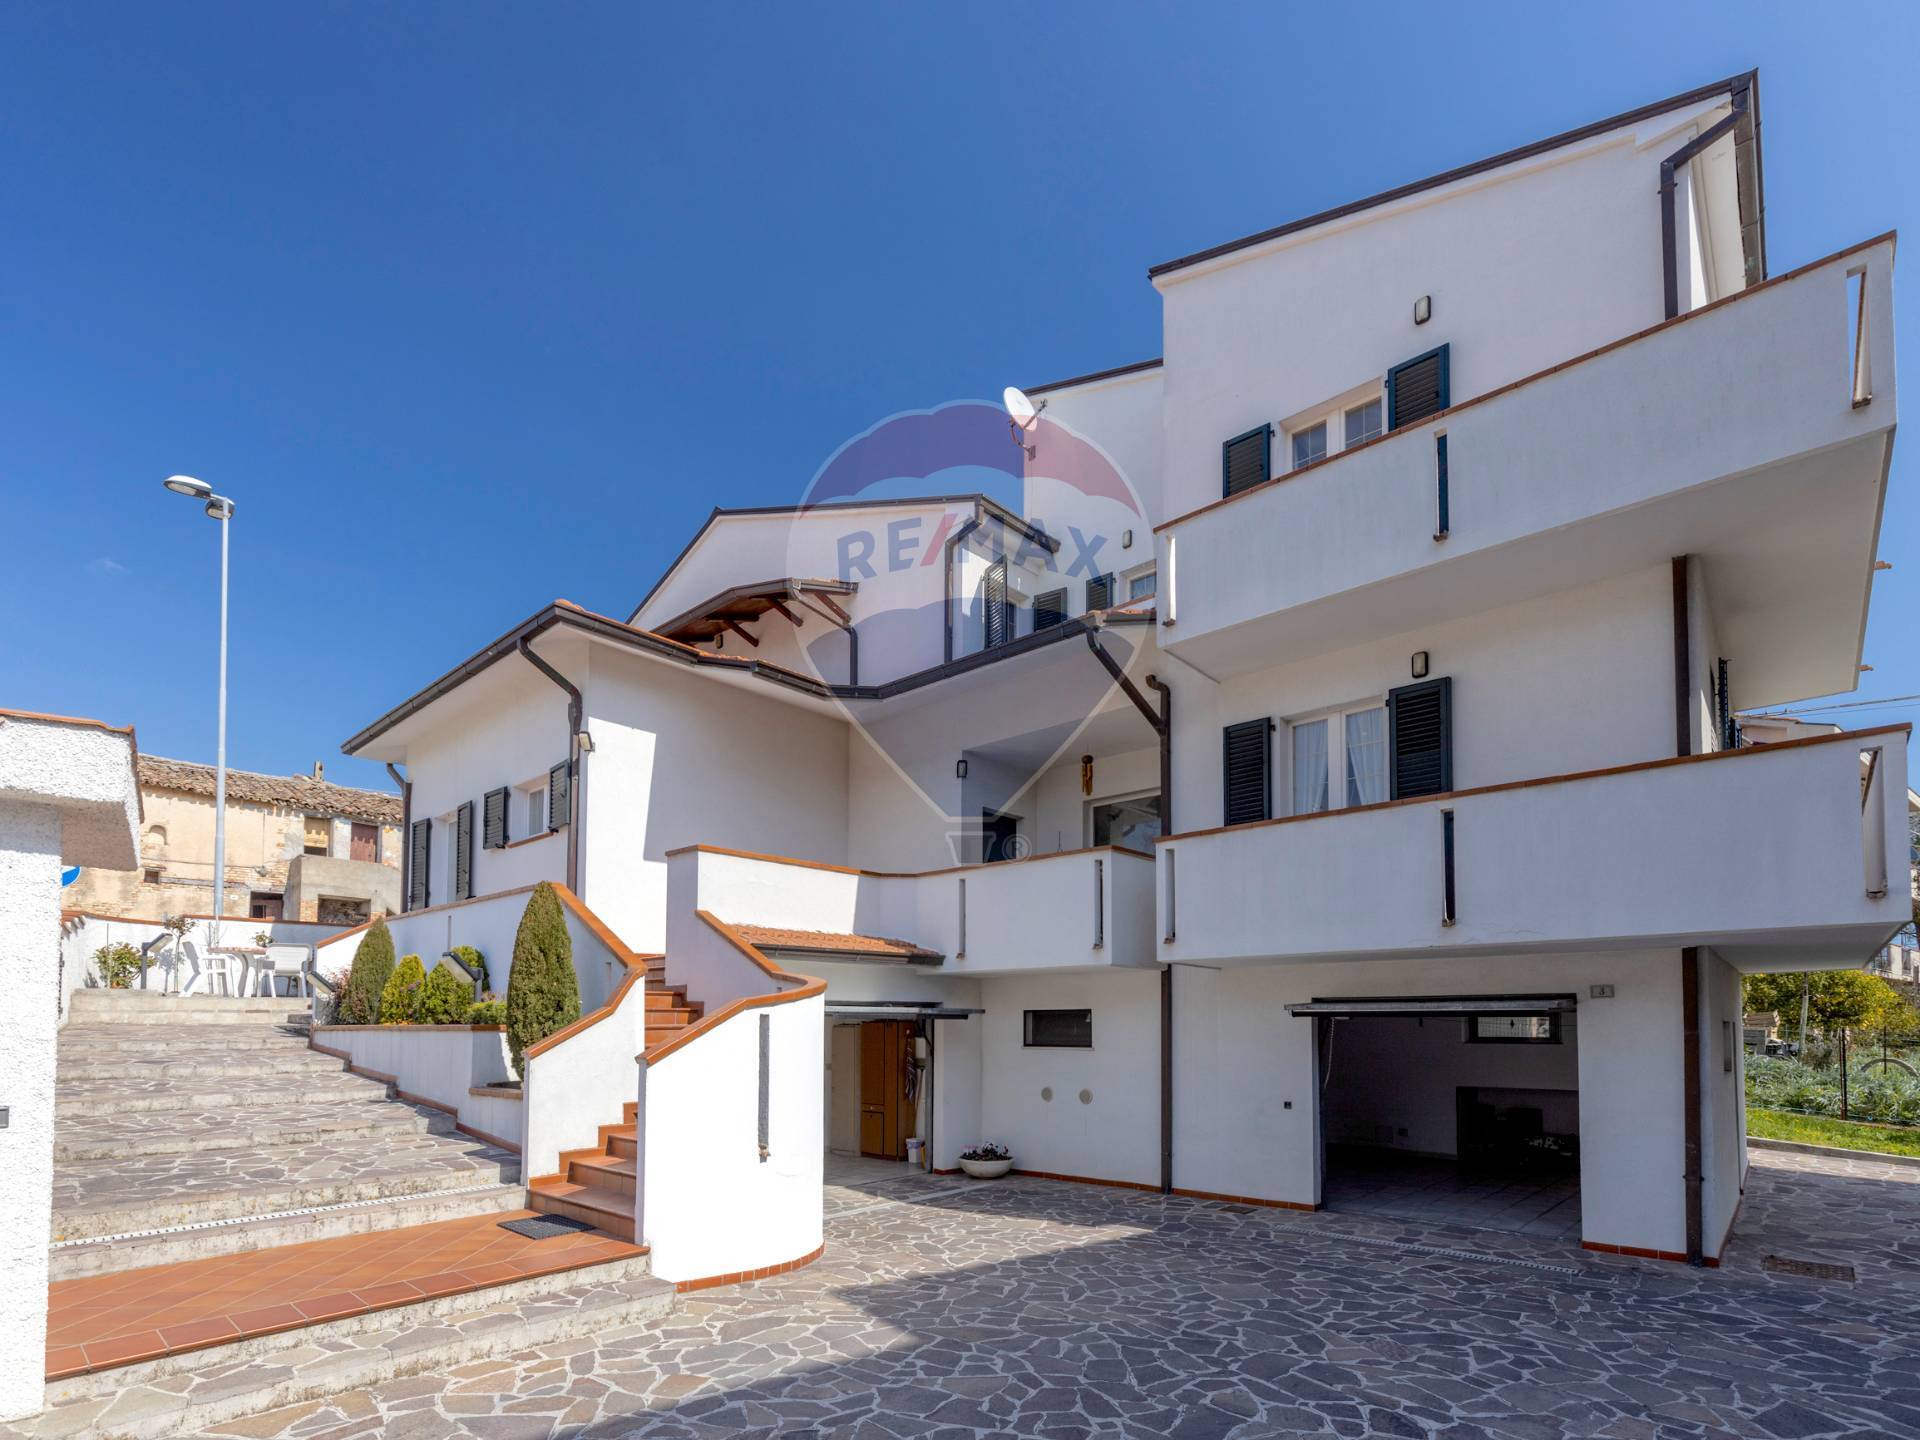 Villa in vendita a Loreto, 8 locali, zona Località: VillaCostantina, prezzo € 396.000 | CambioCasa.it